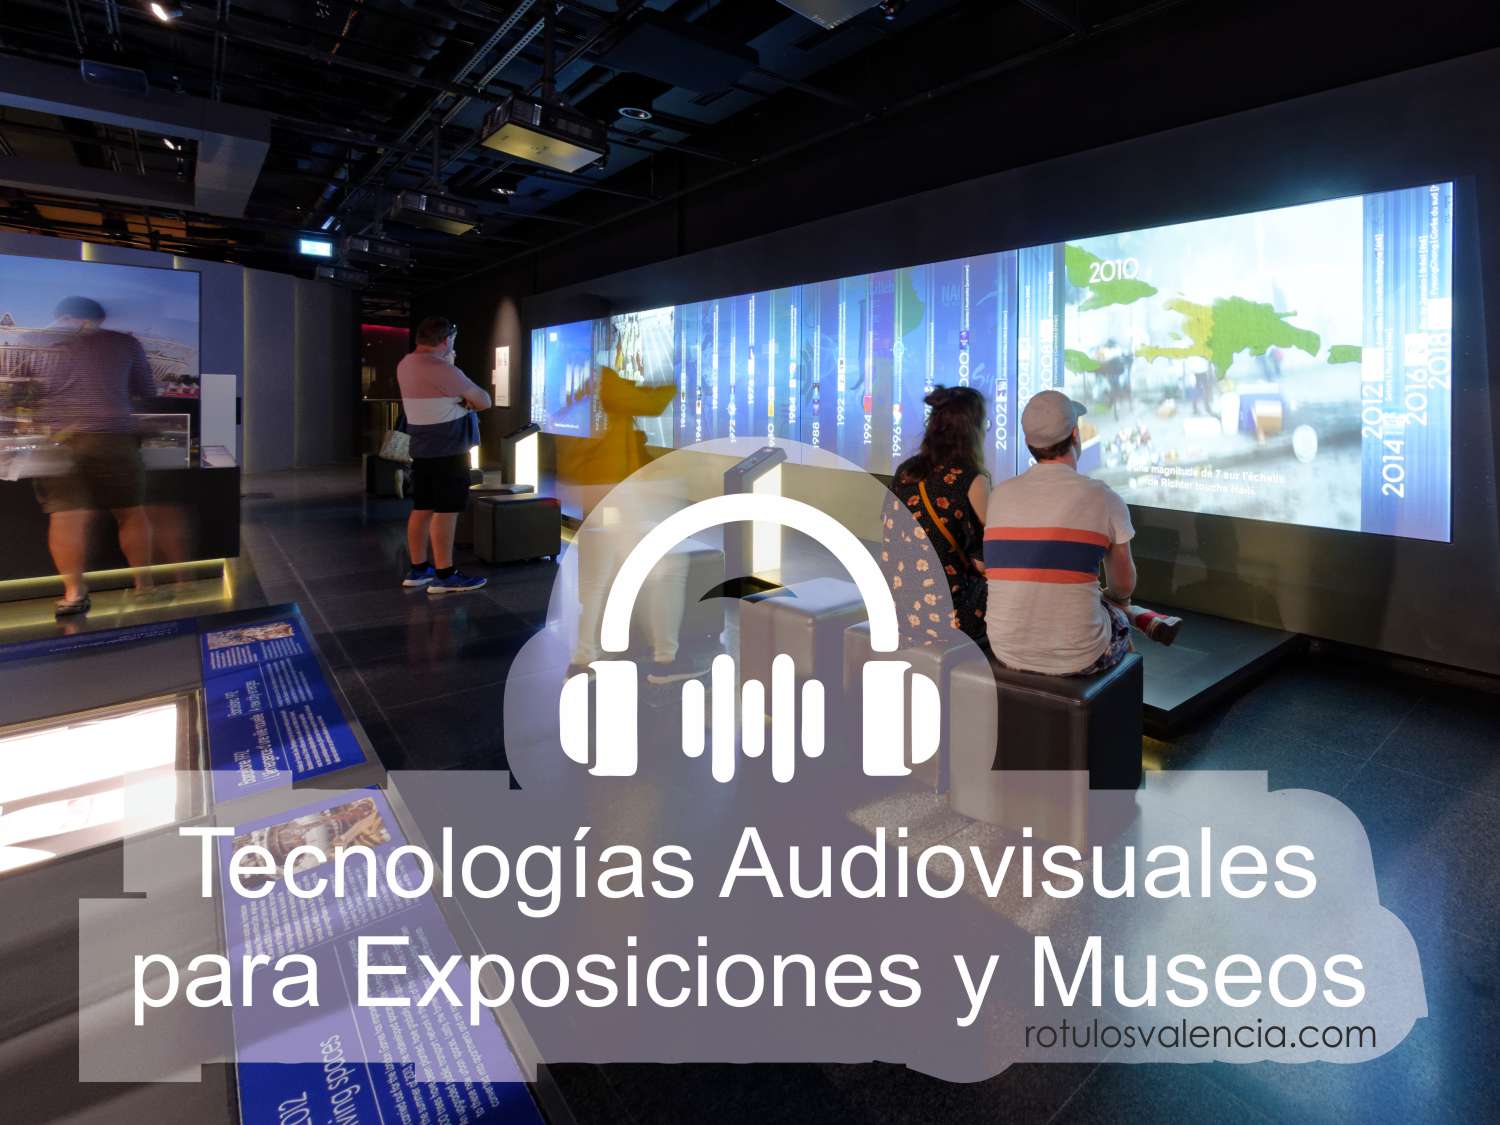 Tecnologías audiovisuales para Exposiciones y Museos